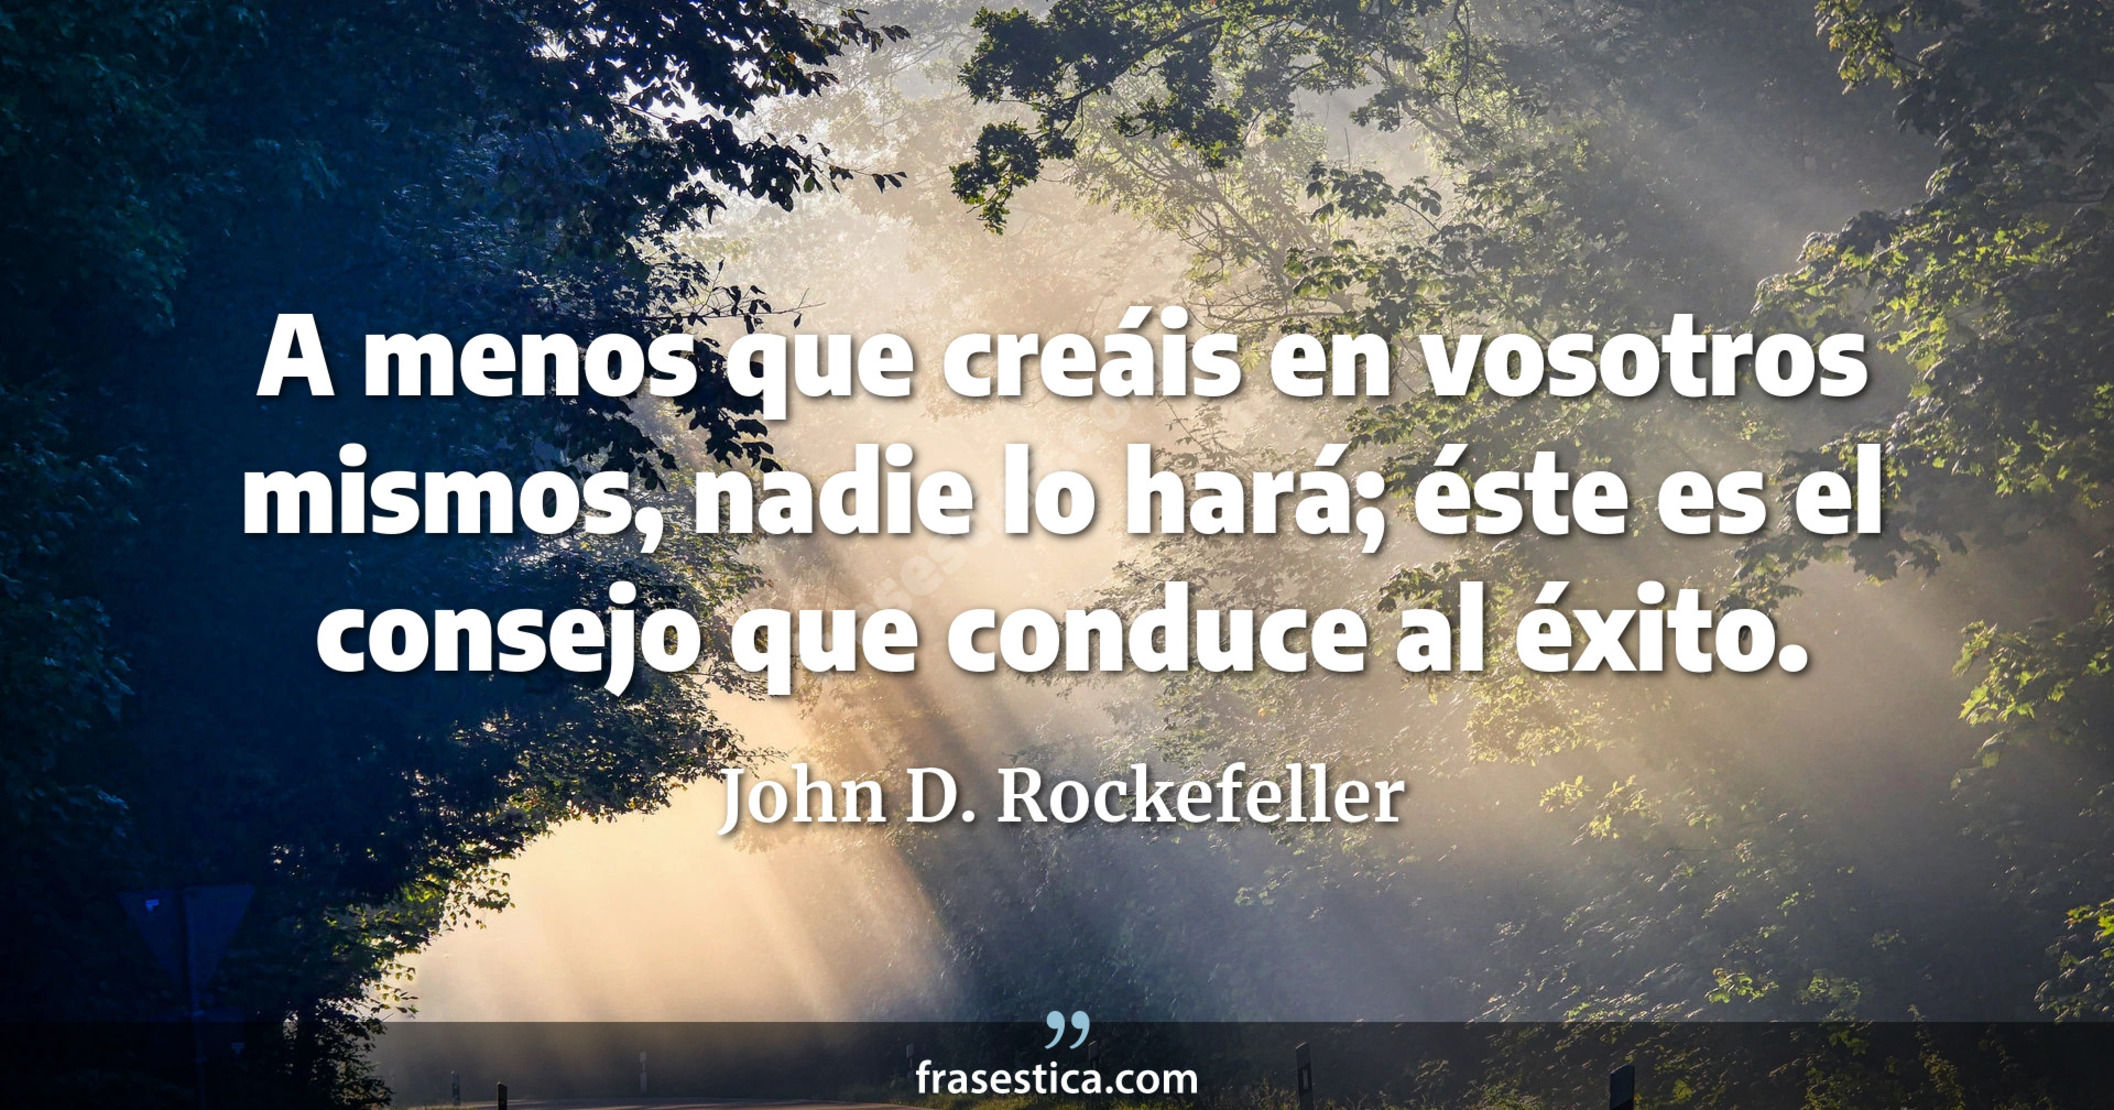 A menos que creáis en vosotros mismos, nadie lo hará; éste es el consejo que conduce al éxito. - John D. Rockefeller